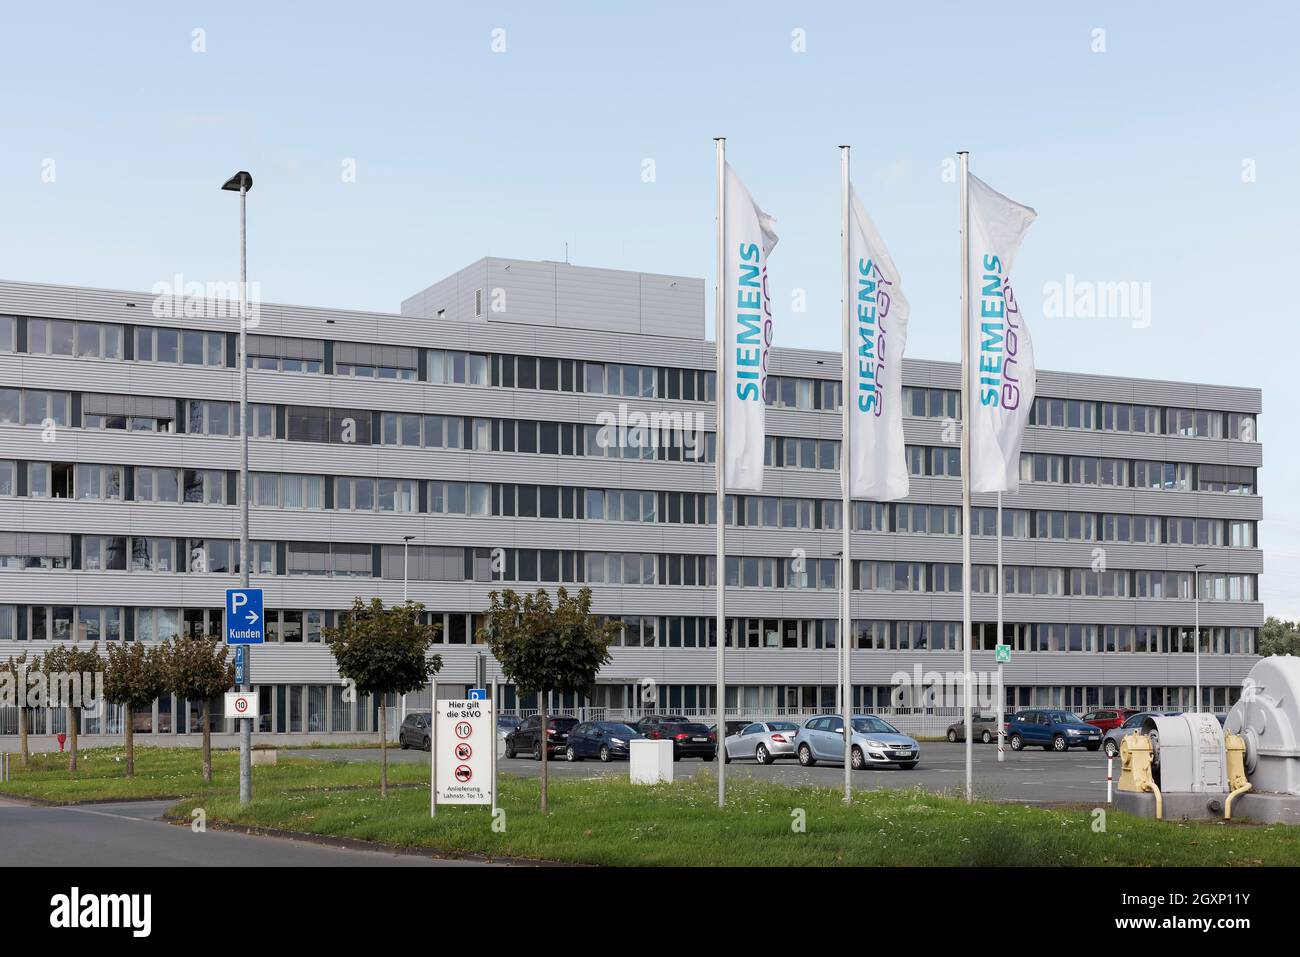 Siemens Energy, société de technologie énergétique, site de Muelheim an der Ruhr, région de la Ruhr, Rhénanie-du-Nord-Westphalie, Allemagne Banque D'Images